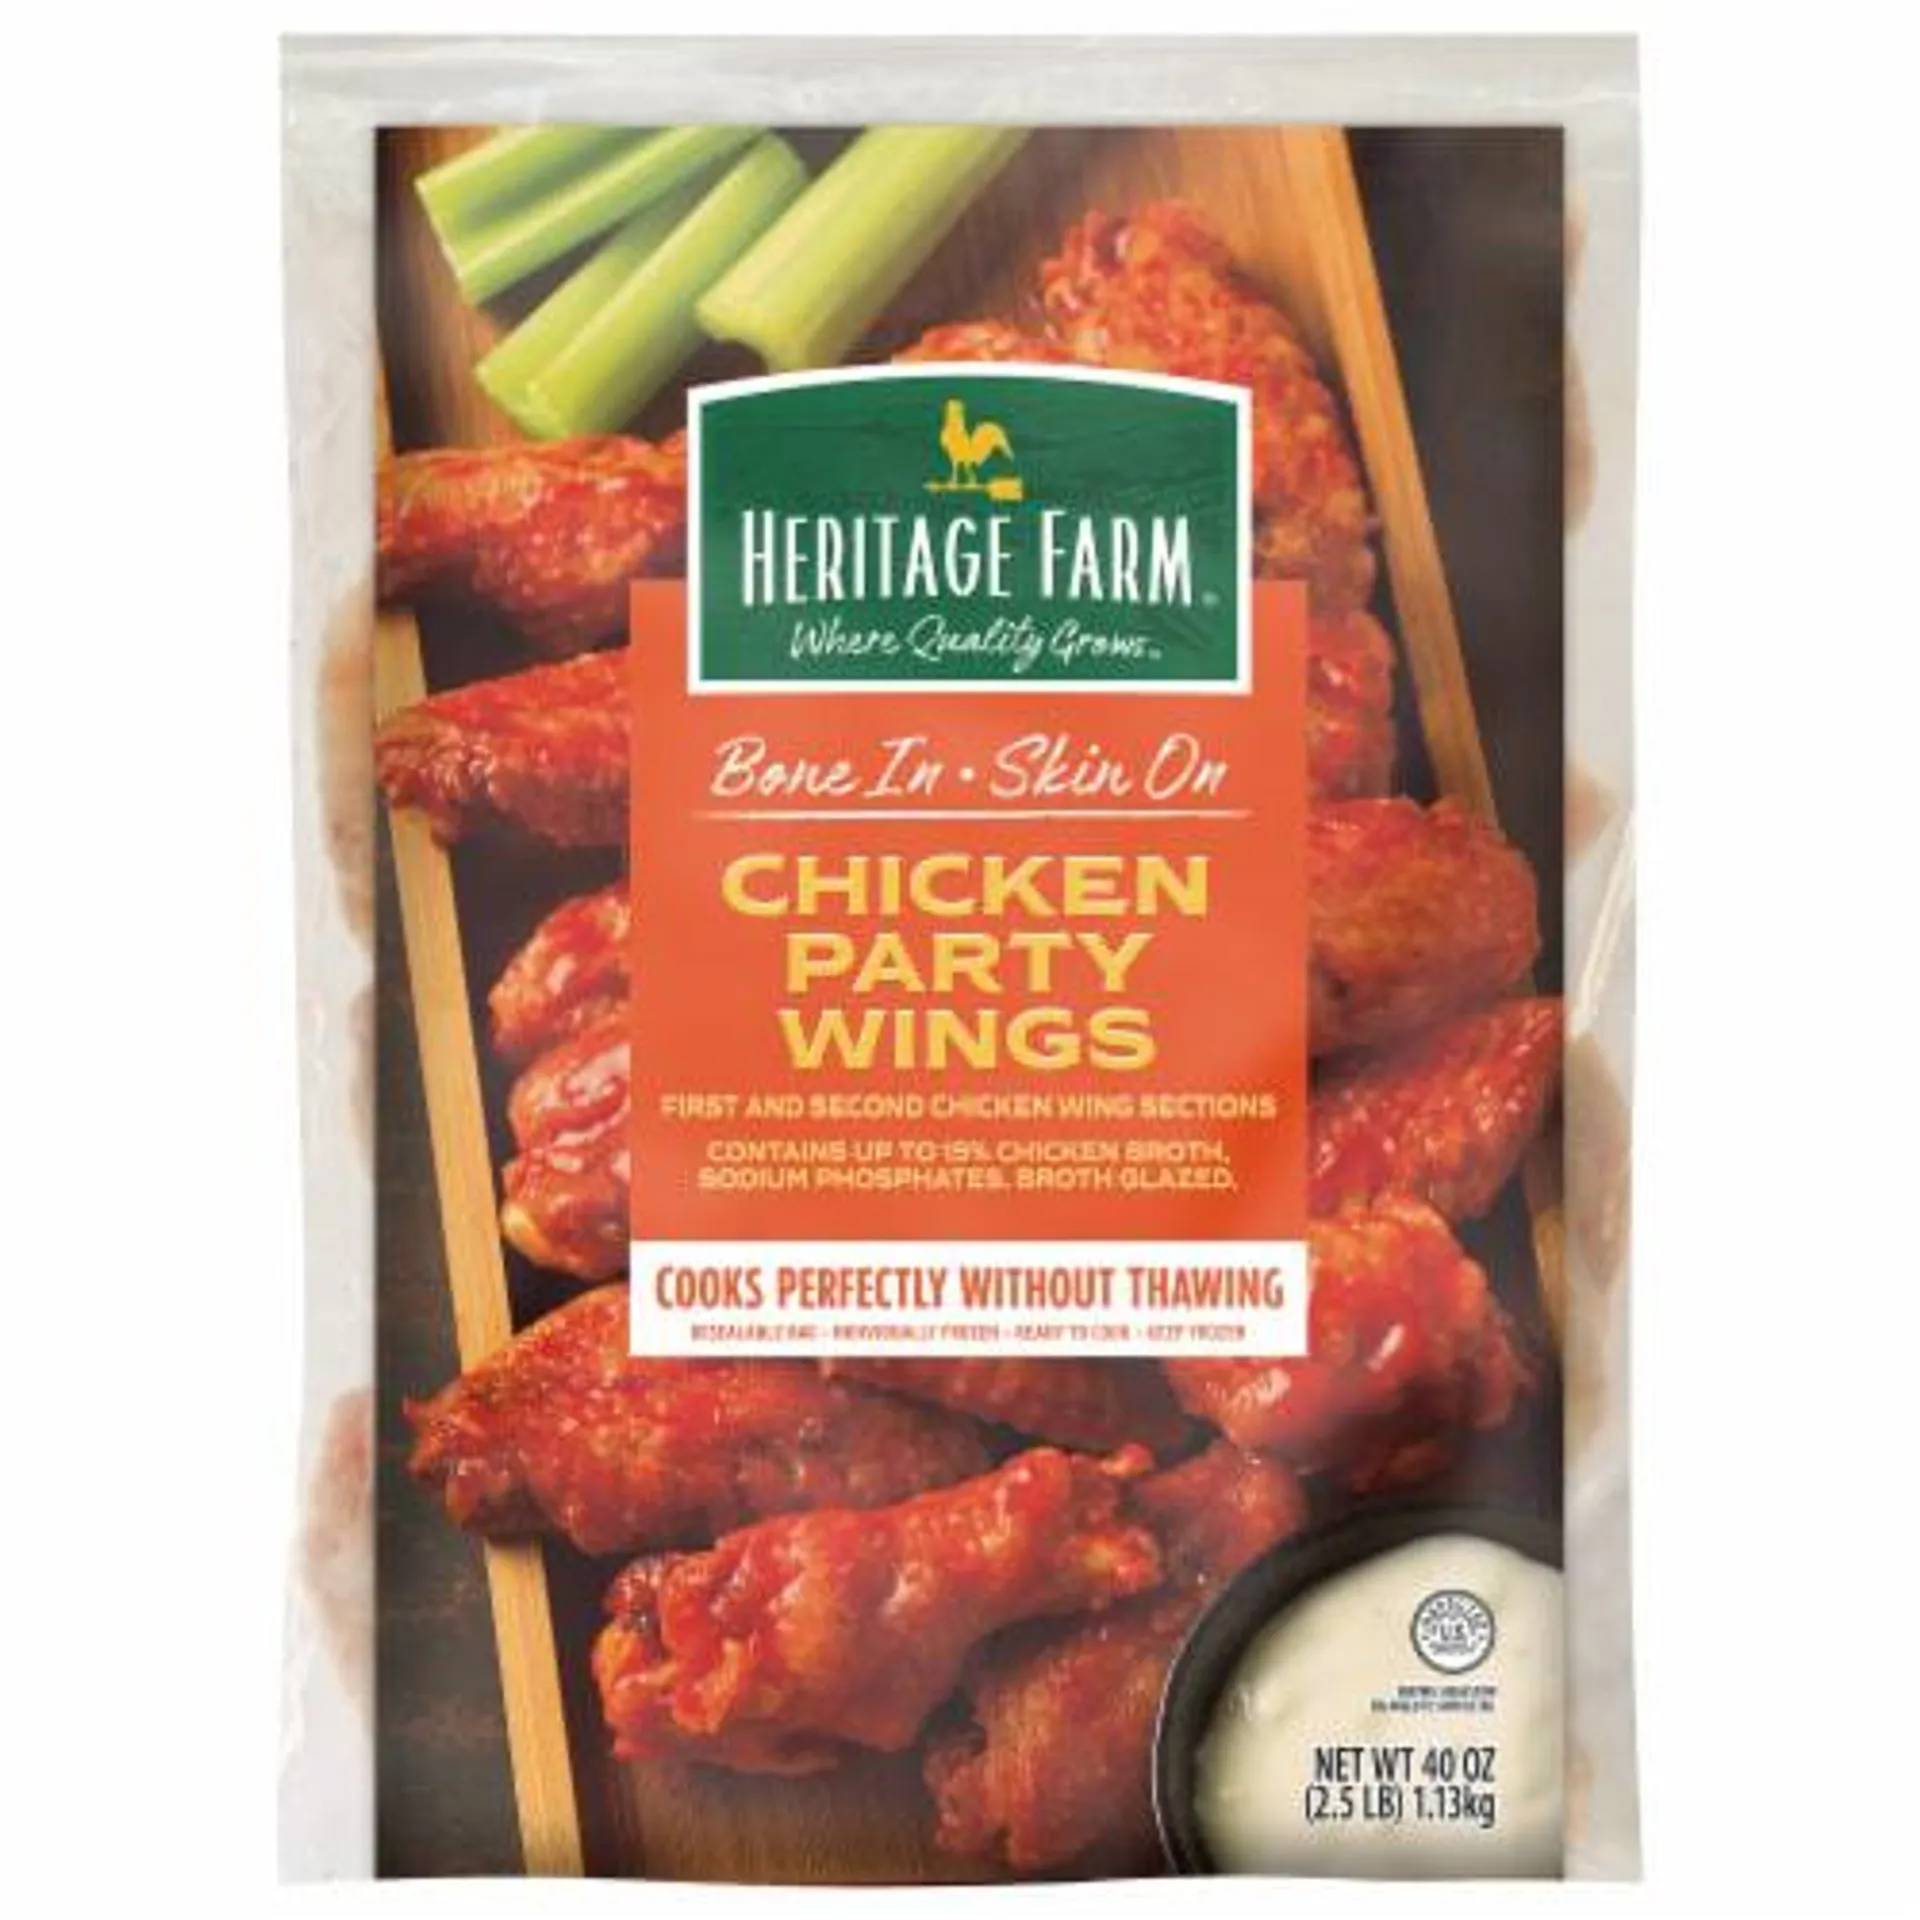 Heritage Farm® Bone-In Skin-On Chicken Party Wings